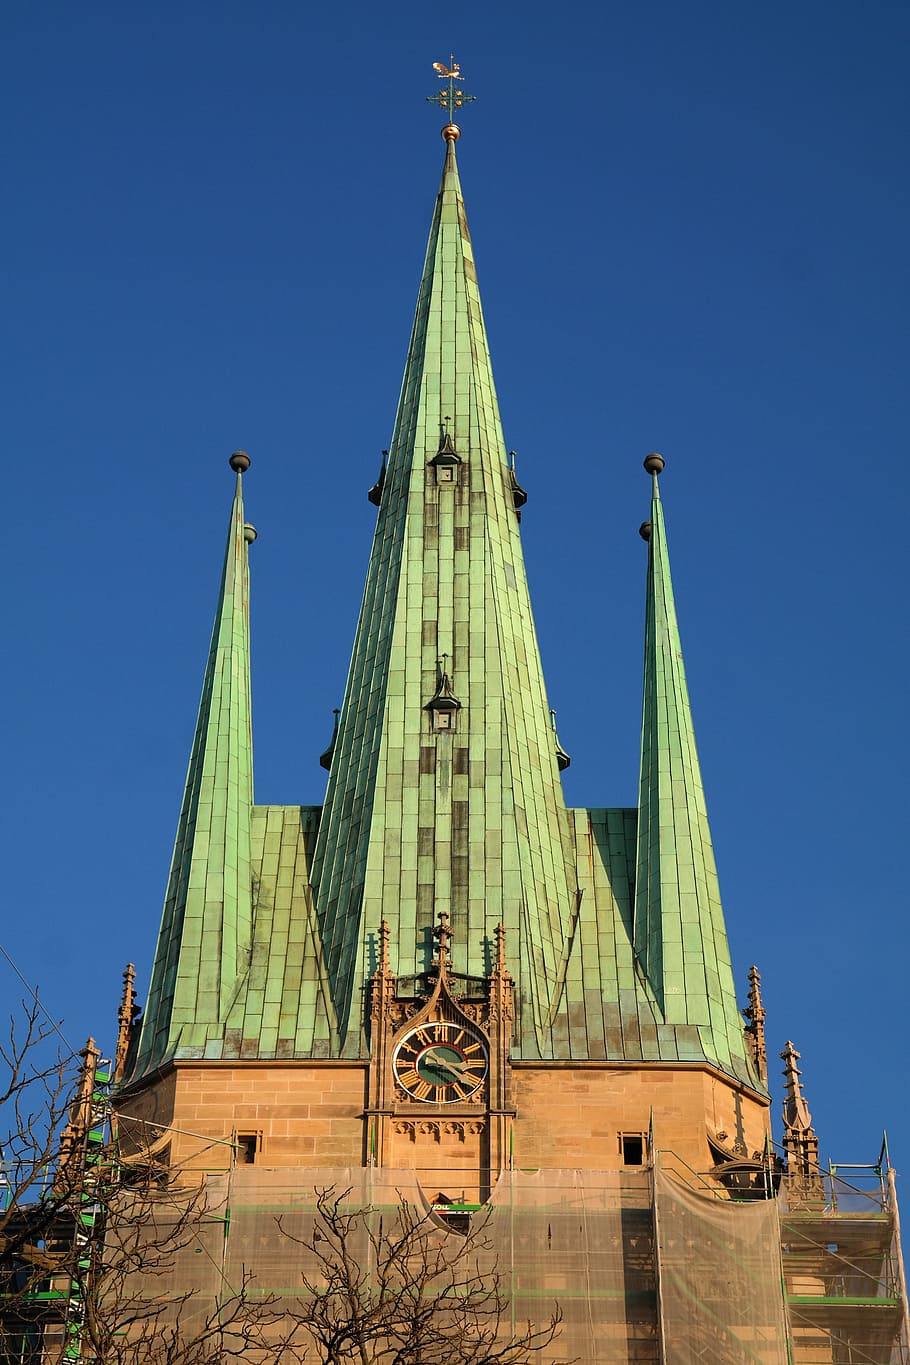 San Jorge, Iglesia, Iglesia de San Jorge, Ulm, edificio, arquitectura, torre, agujas, católica, iglesia de la guarnición católica